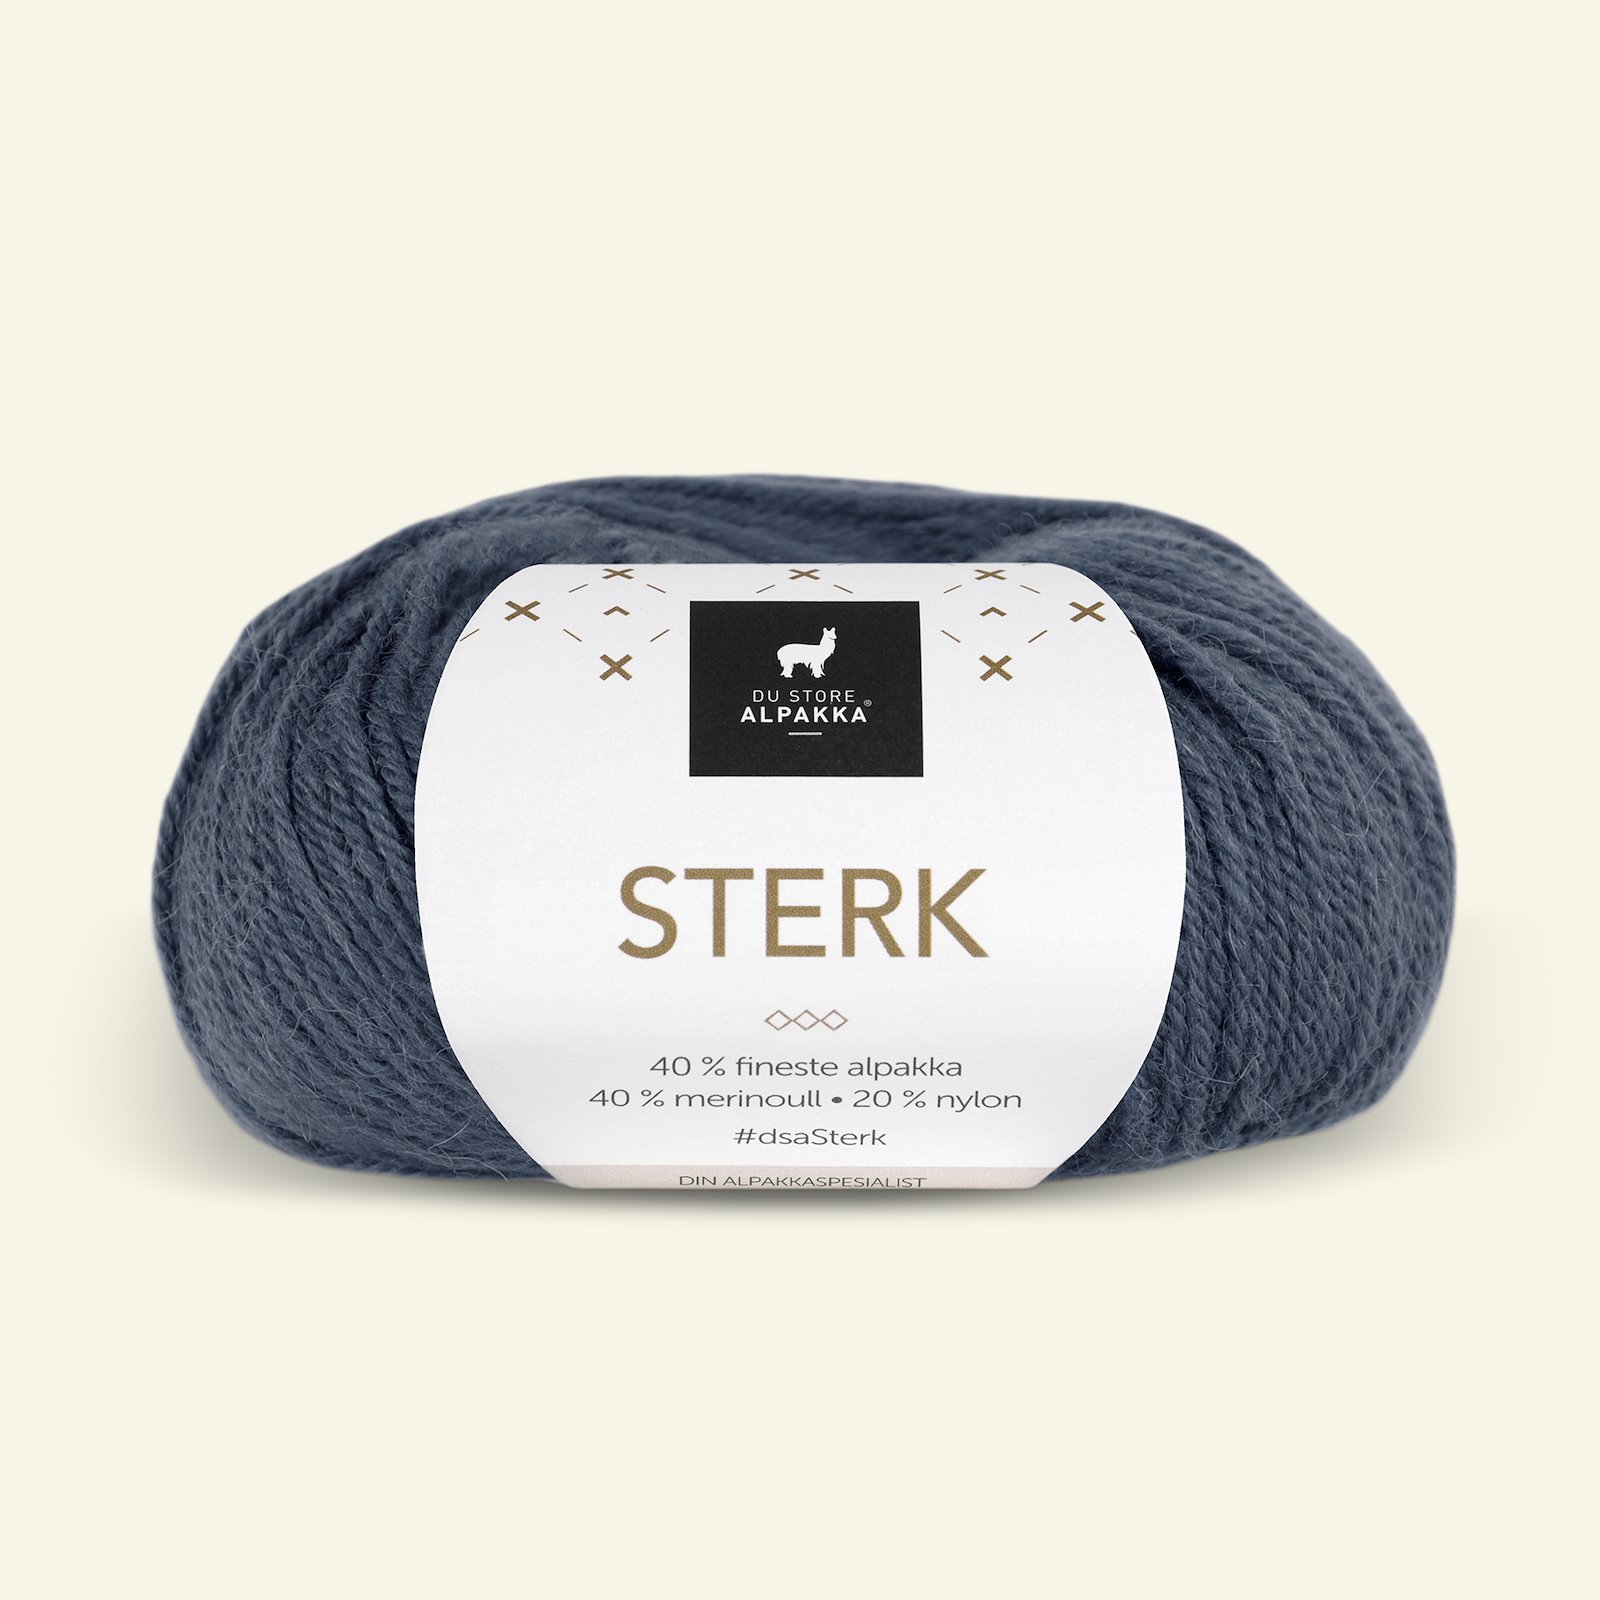 Du Store Alpakka, alpaca merino blandingsgarn, "Sterk", mørk gråblå (861) 90000683_pack